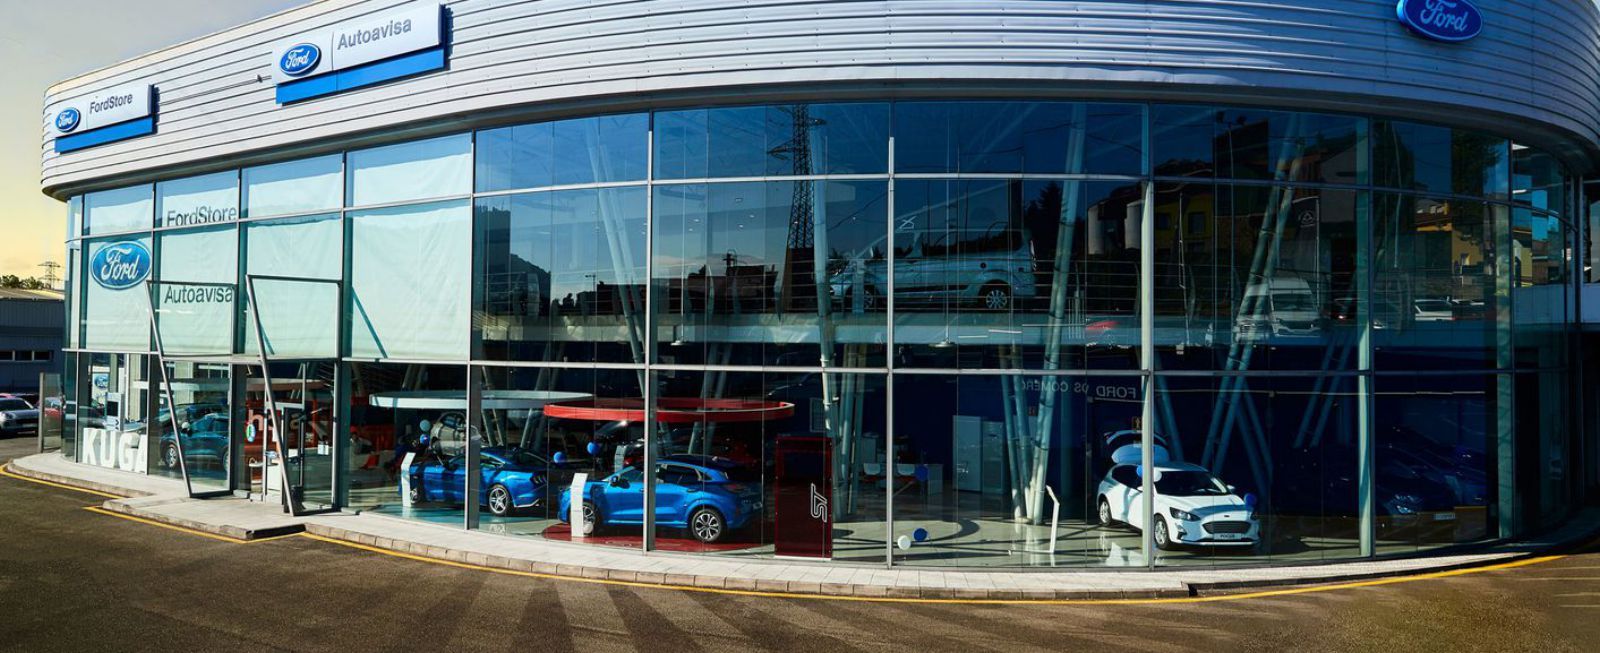 Instalaciones de Ford Autoavisa, uno de los concesionarios del grupo Blendio.